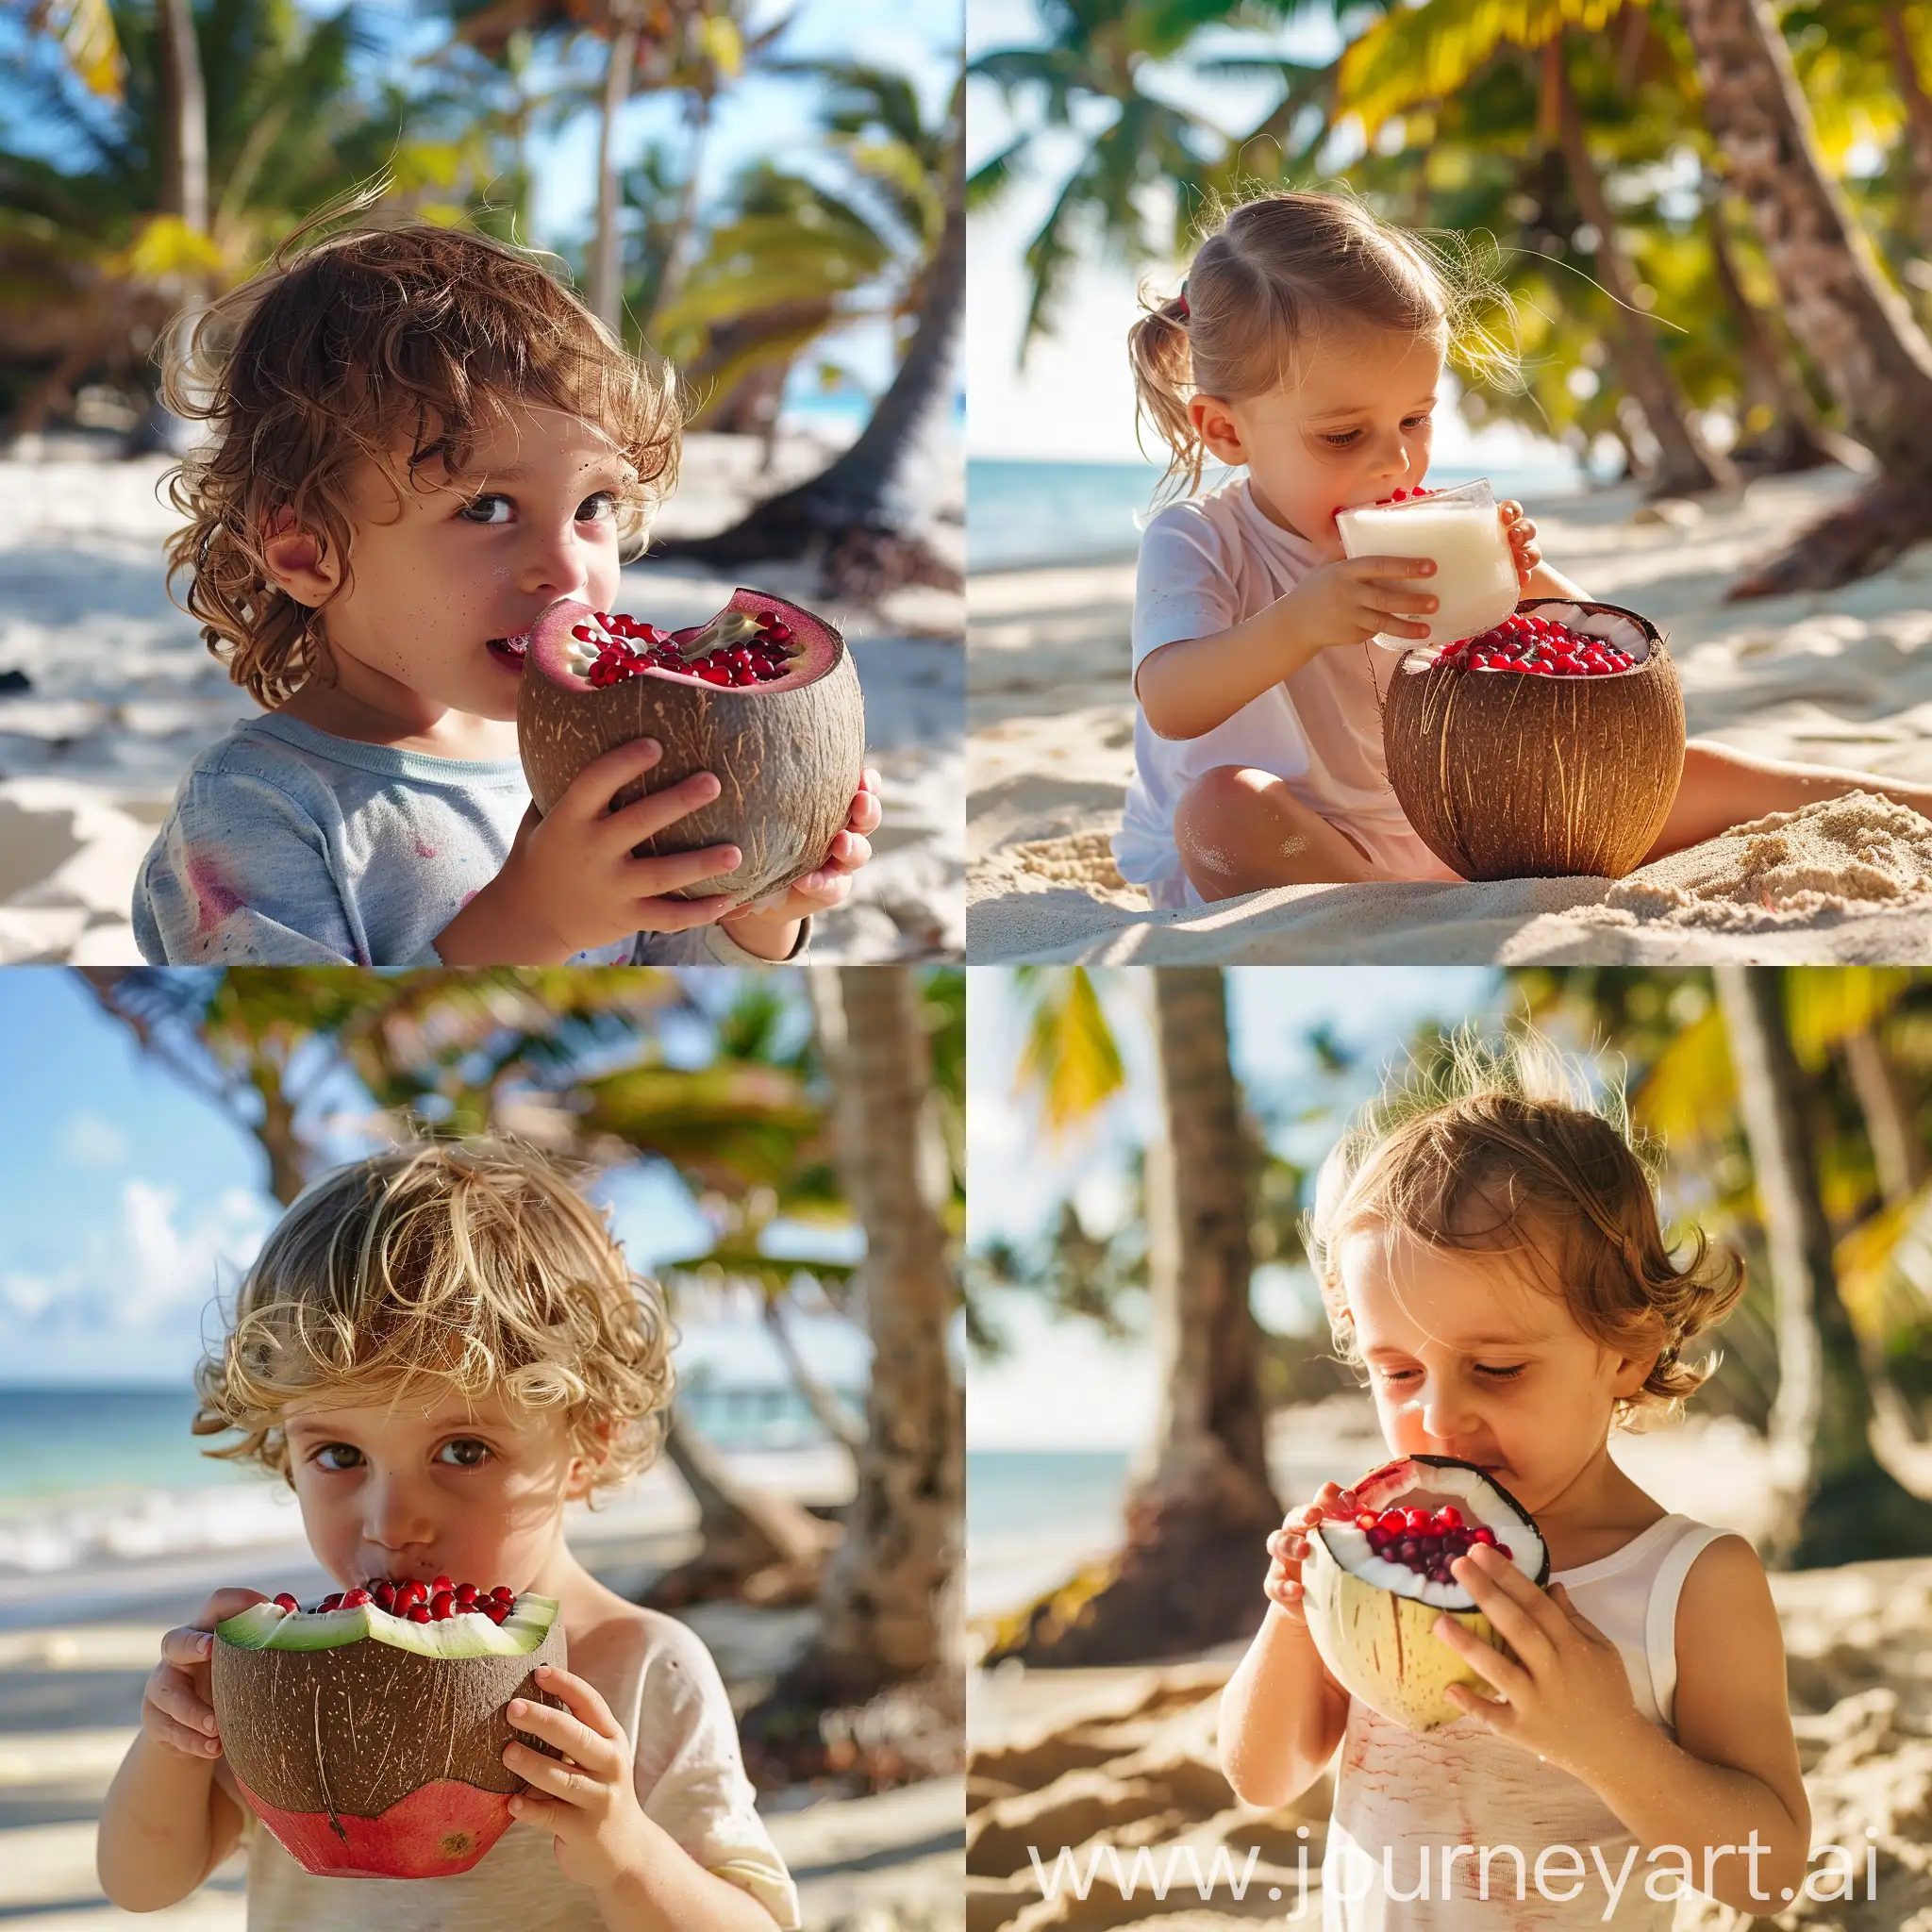 кокосовый напиток с гранат фрукт пьет ребенок на фоне пляжа солнечный день пальмы